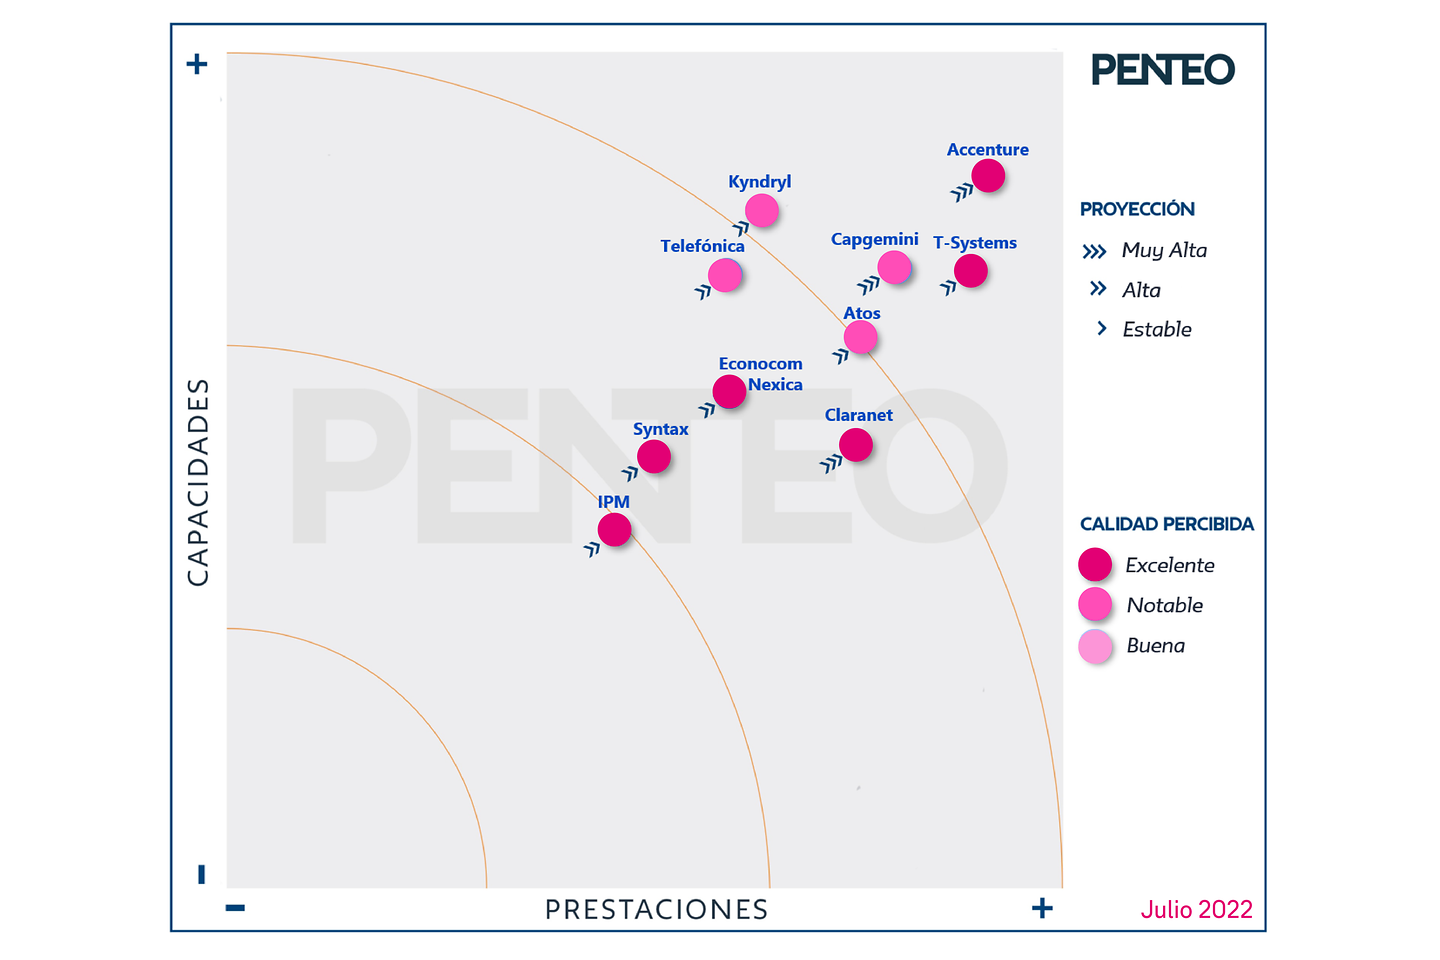 T-Systems consolida sus servicios cloud en España y vuelve a liderar el mercado por séptimo año consecutivo según PENTEO